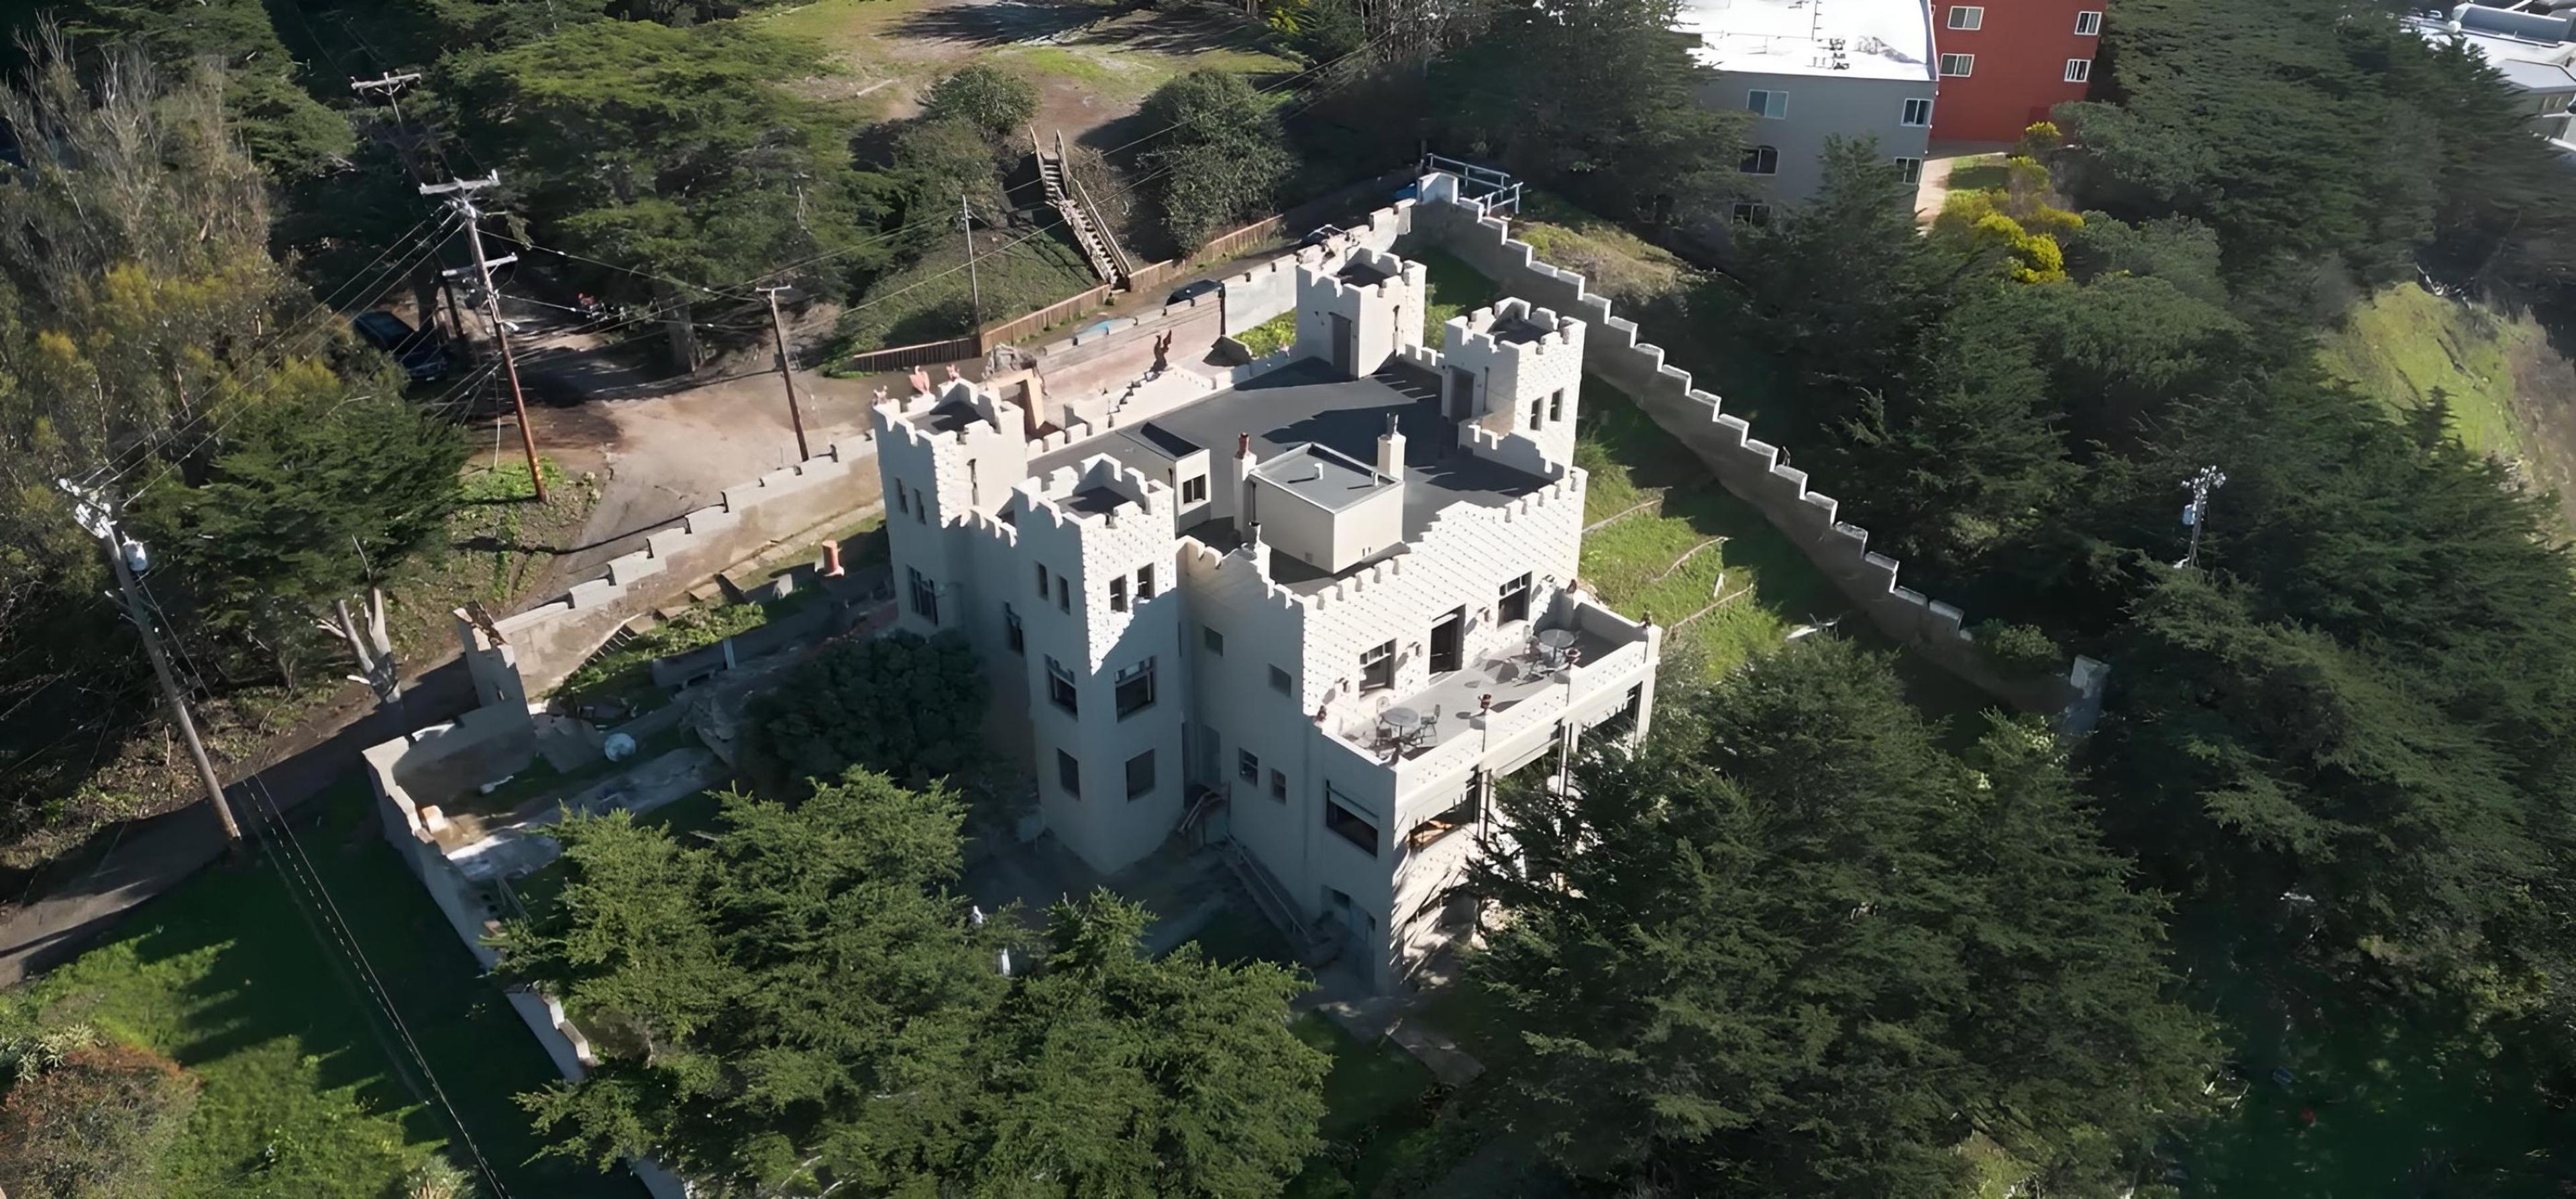 Sam's Castle